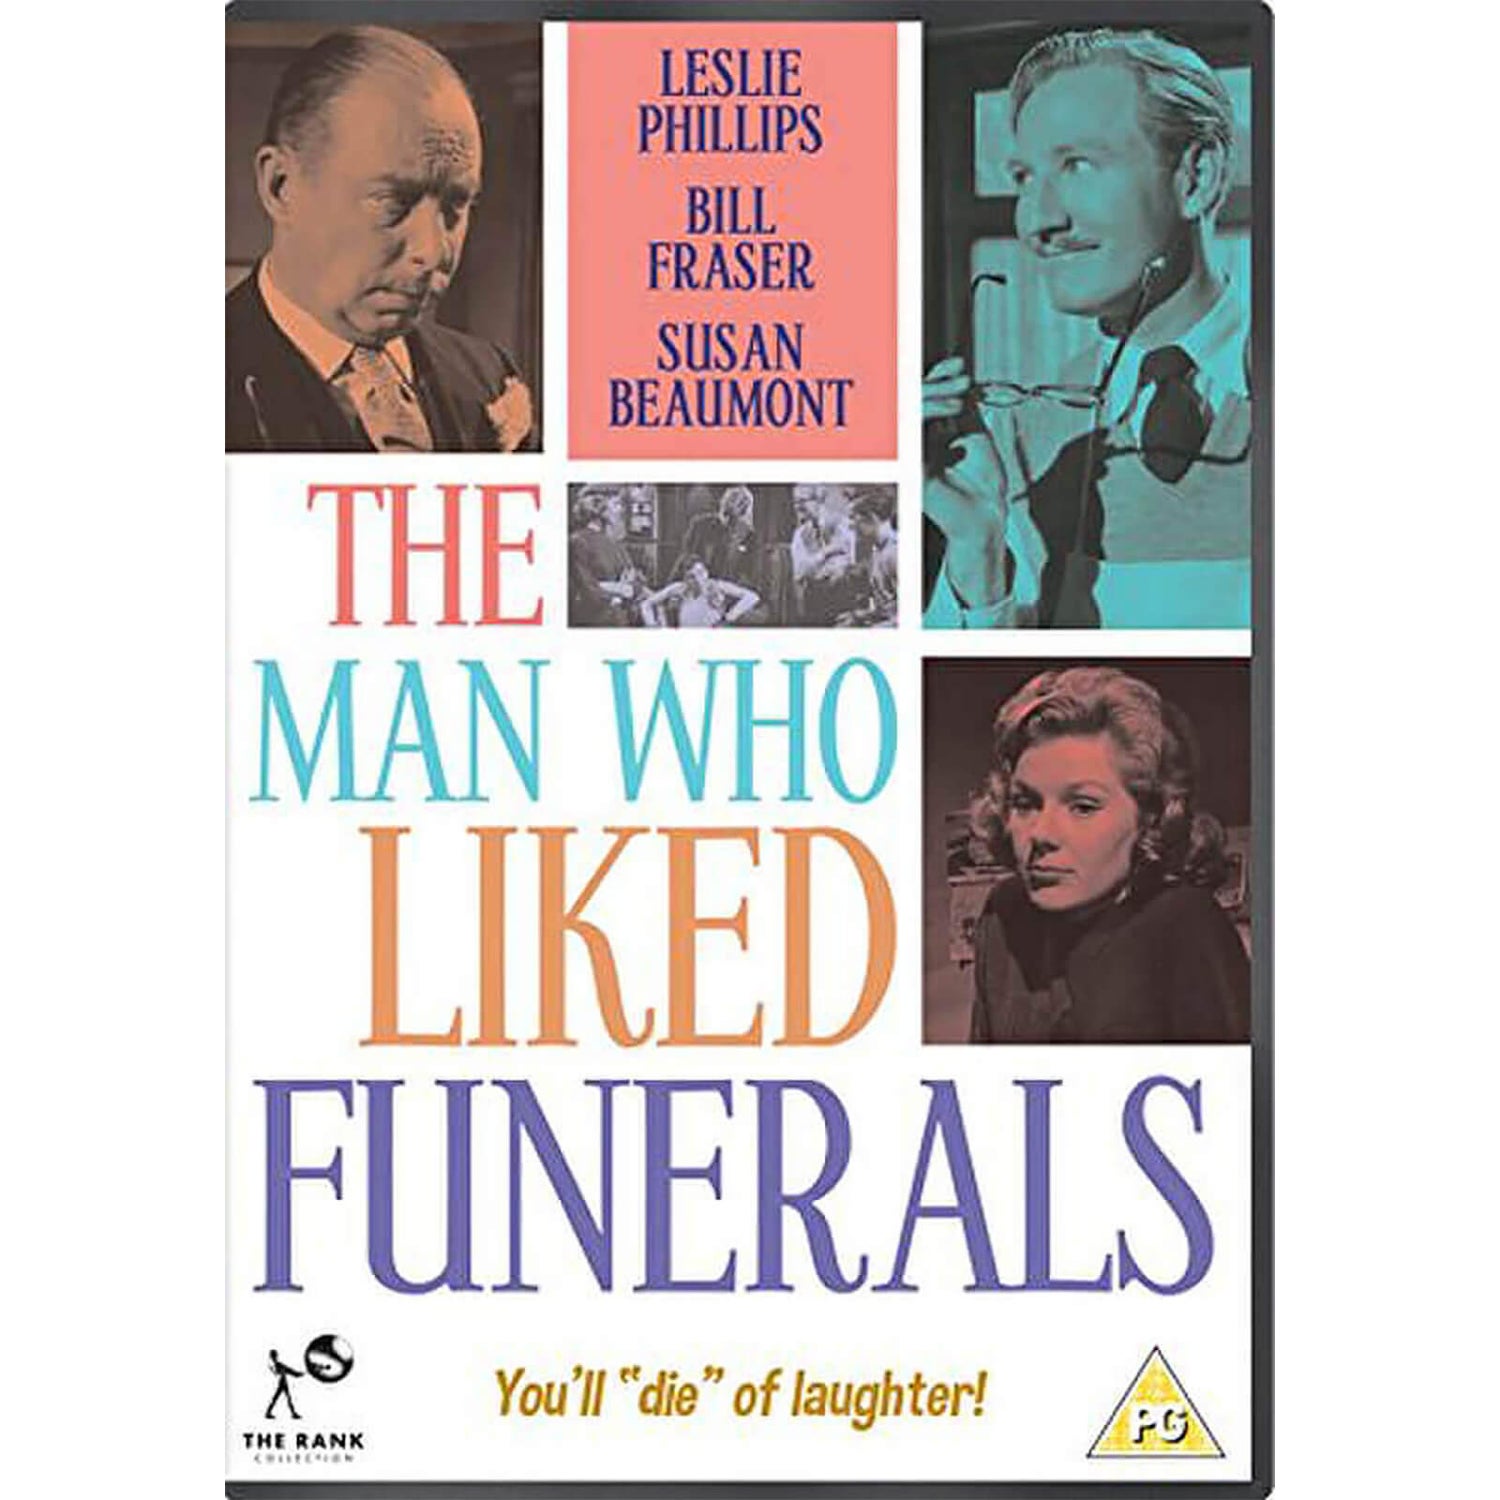 L'homme qui aimait les funérailles